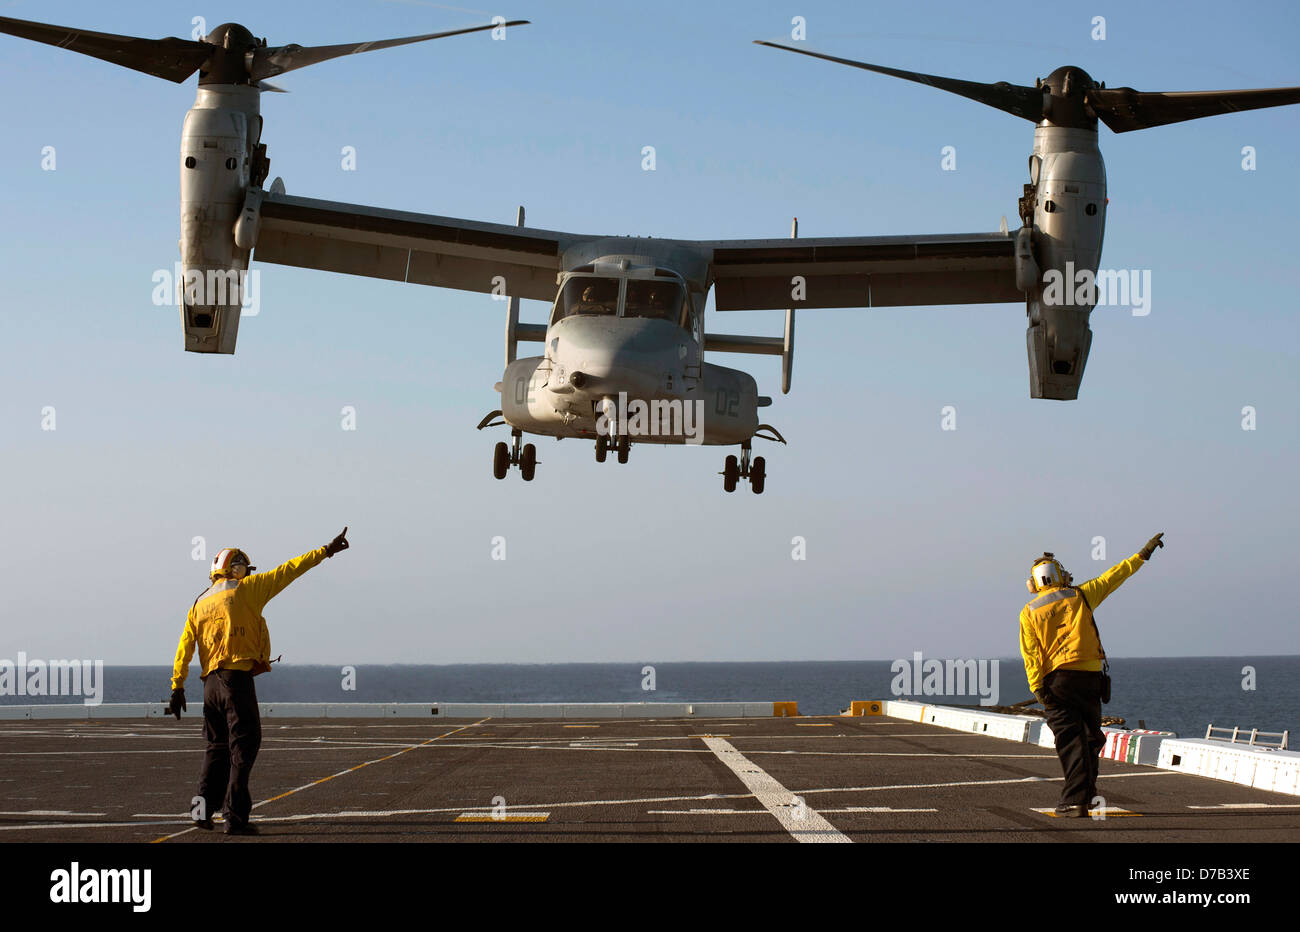 US Marine Aviation Bootsmännern Mates leitet der Start ein MV-22 Osprey kippen Rotor Flugzeuge auf dem Flugdeck der Amphibious Transport Dock Schiff USS Anchorage 24. April 2013 in den Pazifischen Ozean. Stockfoto